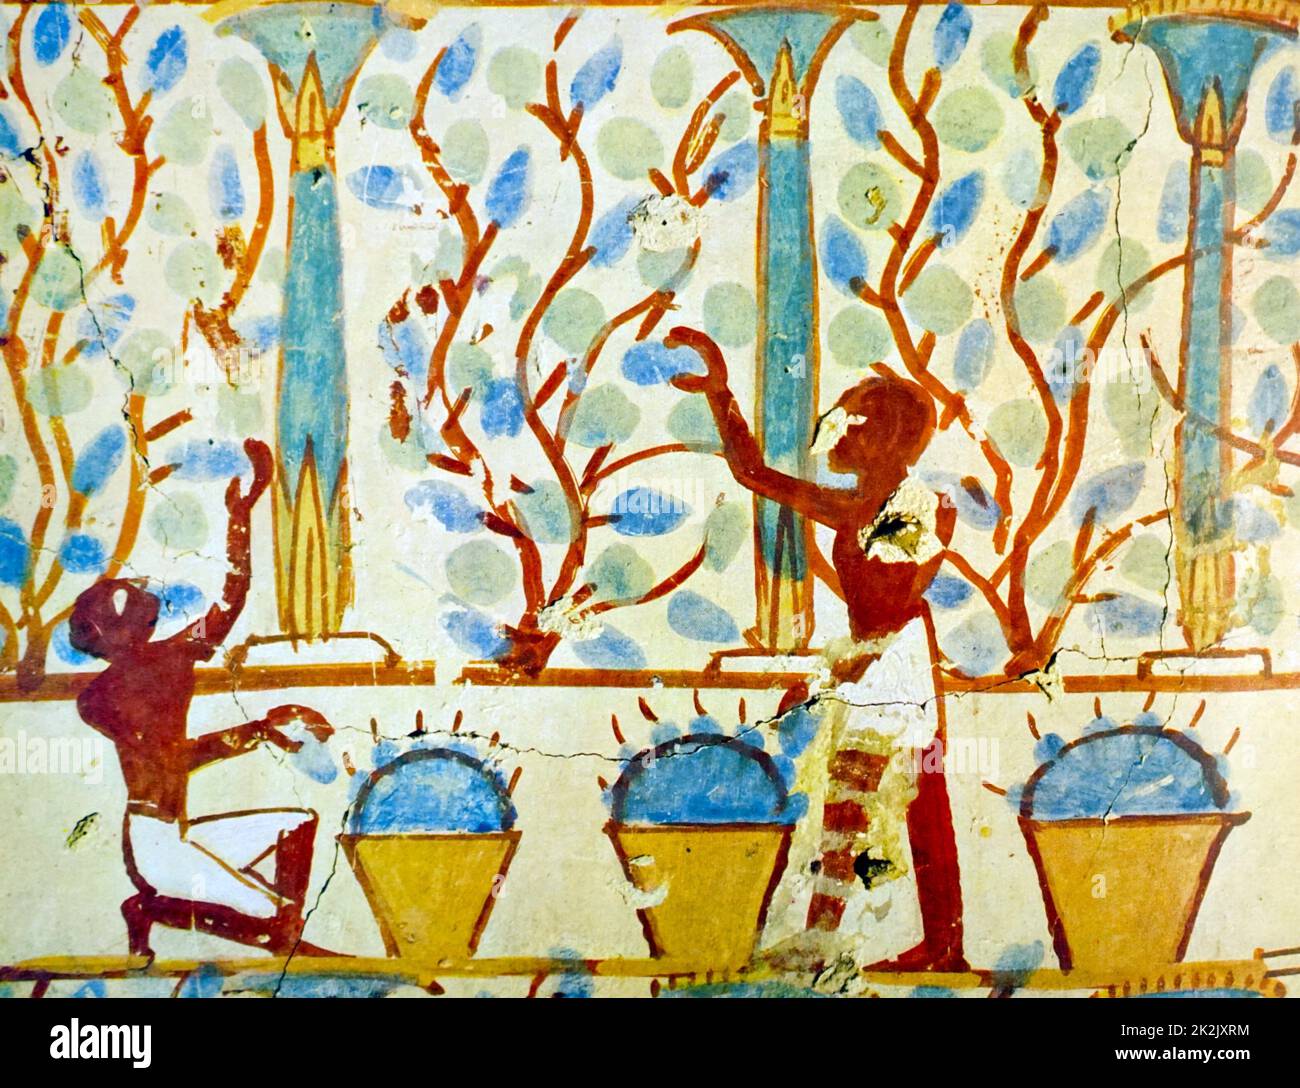 La pintura de la pared tumba egipcia de Tebas, Luxor. Fecha Siglo XI A.C. Foto de stock